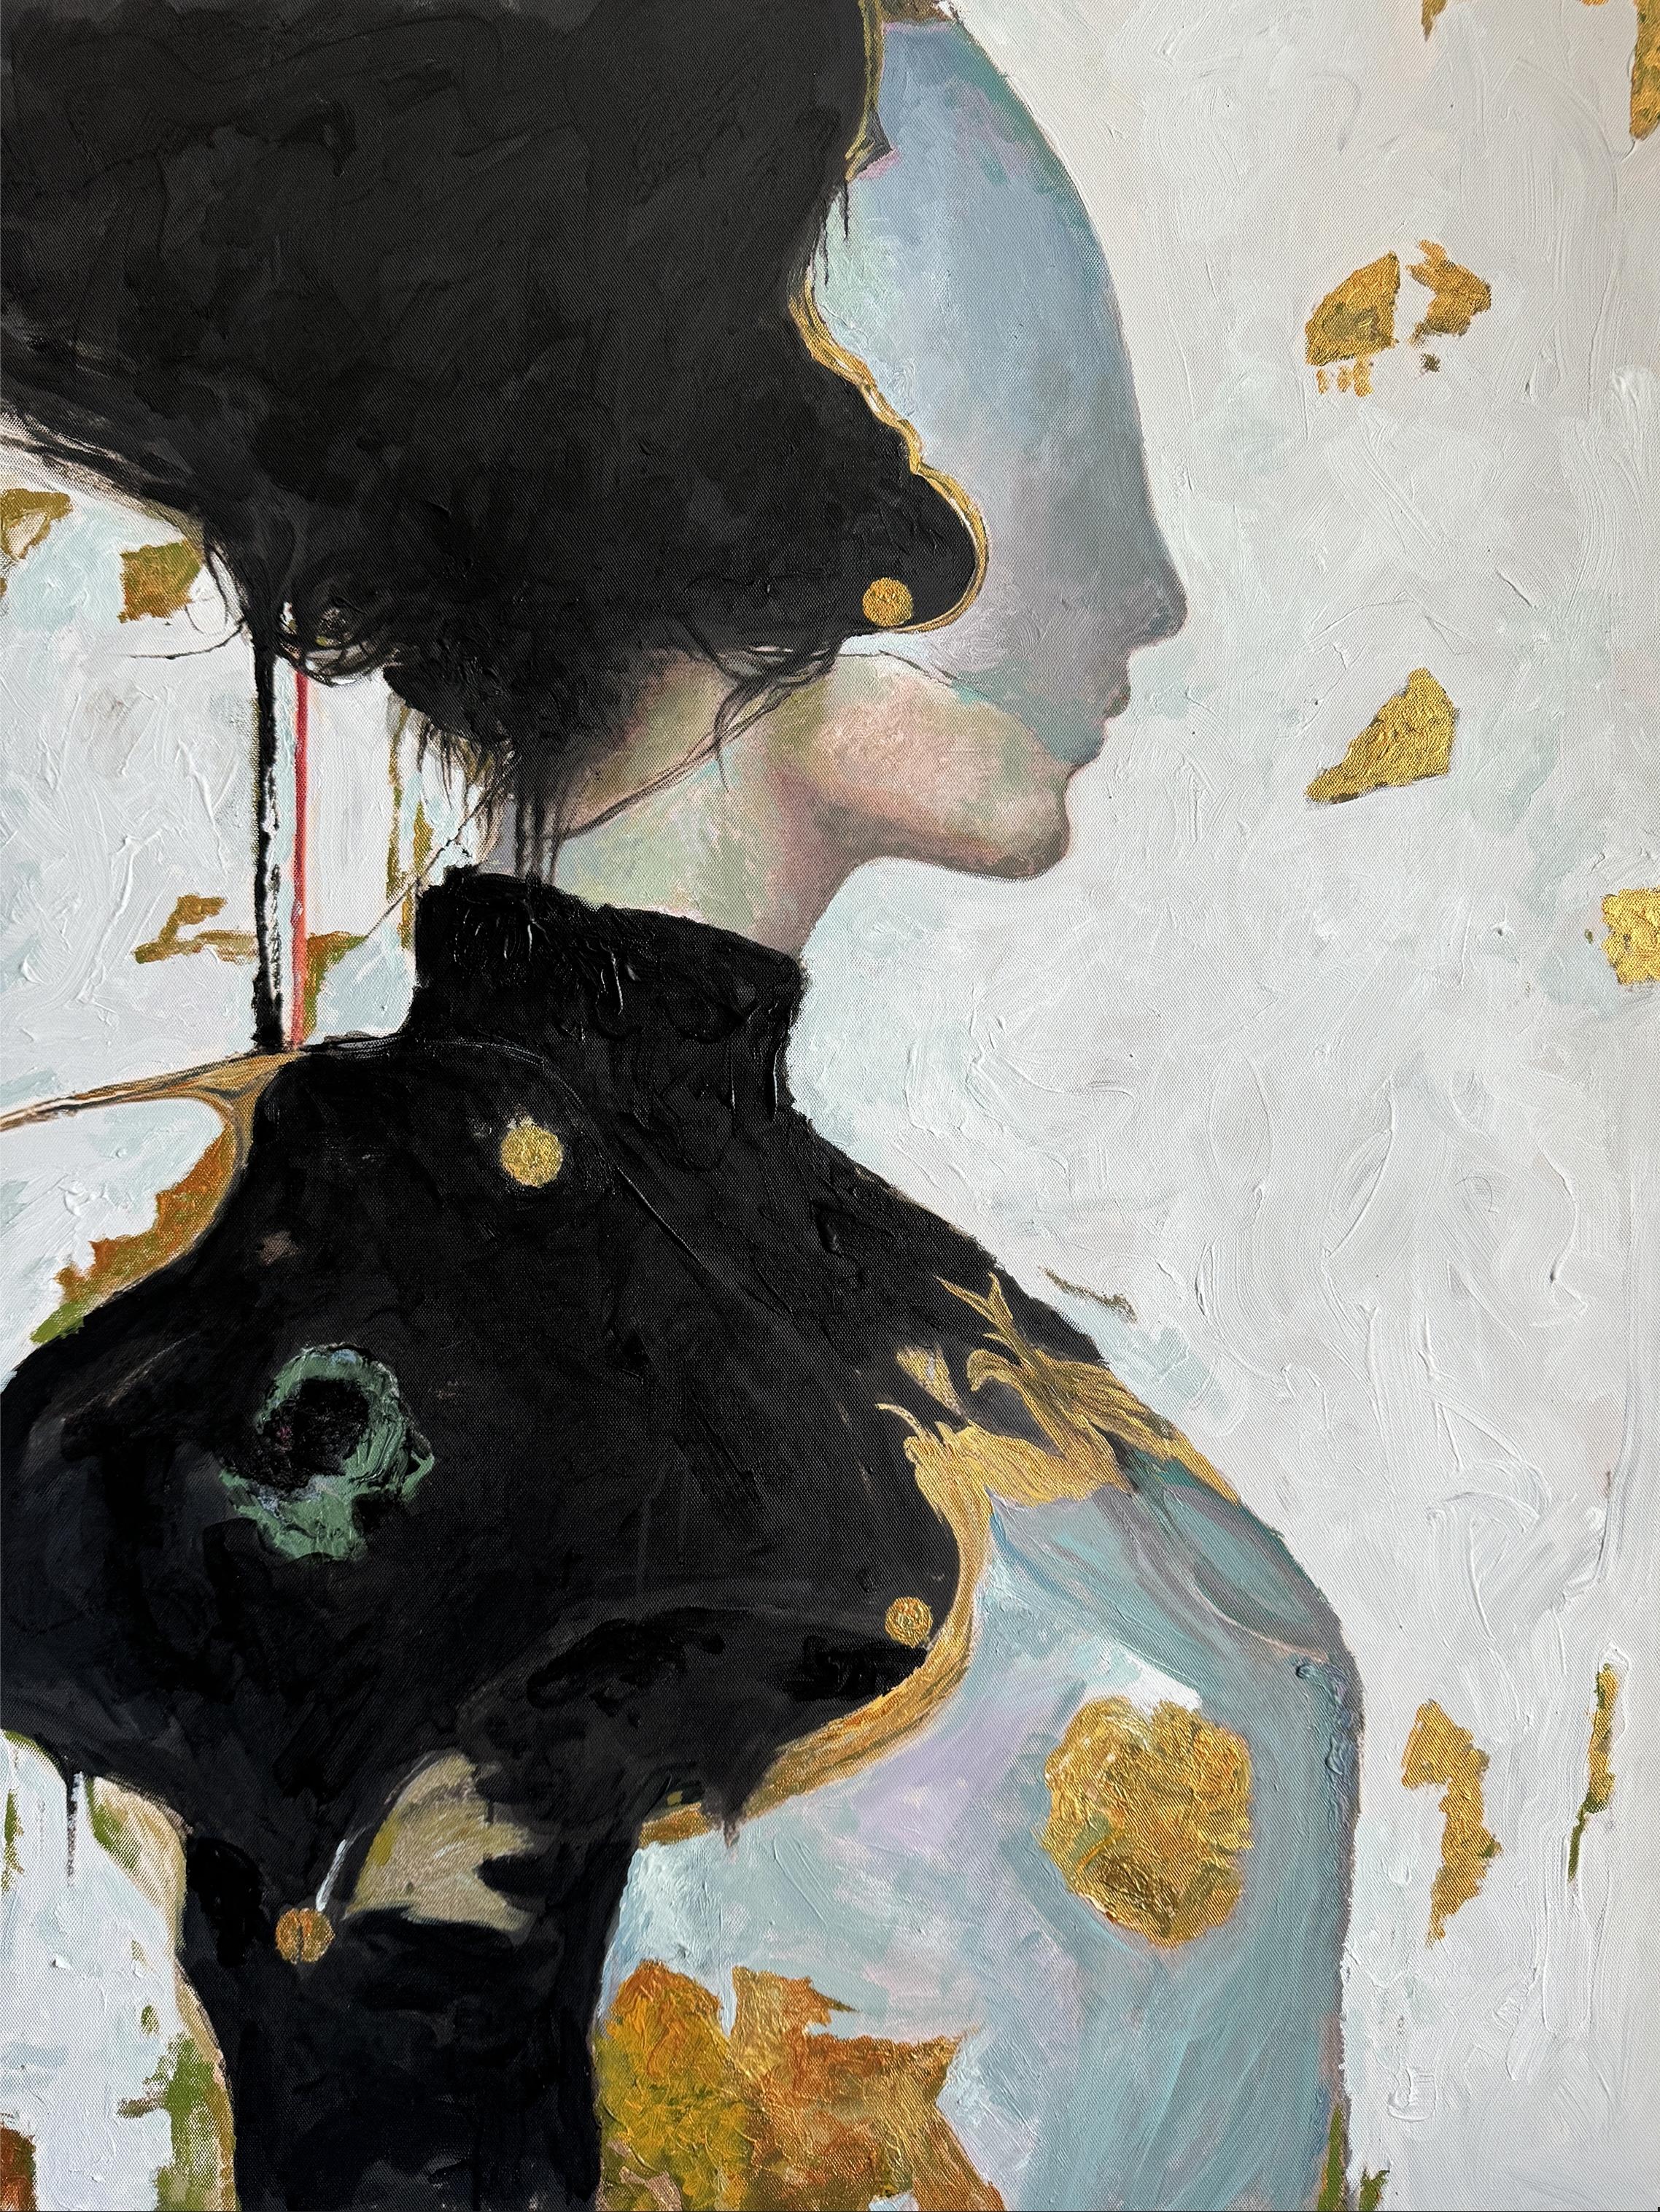 "Iv" Gemälde 35" x 28" Zoll von Vladislav Chenchik

Vladislav Chenchik ist ein zeitgenössischer Künstler aus der Ukraine. In seinen Werken kombiniert er abstrakte und realistische Stile, wobei er sich darauf konzentriert, Mädchen zu porträtieren und